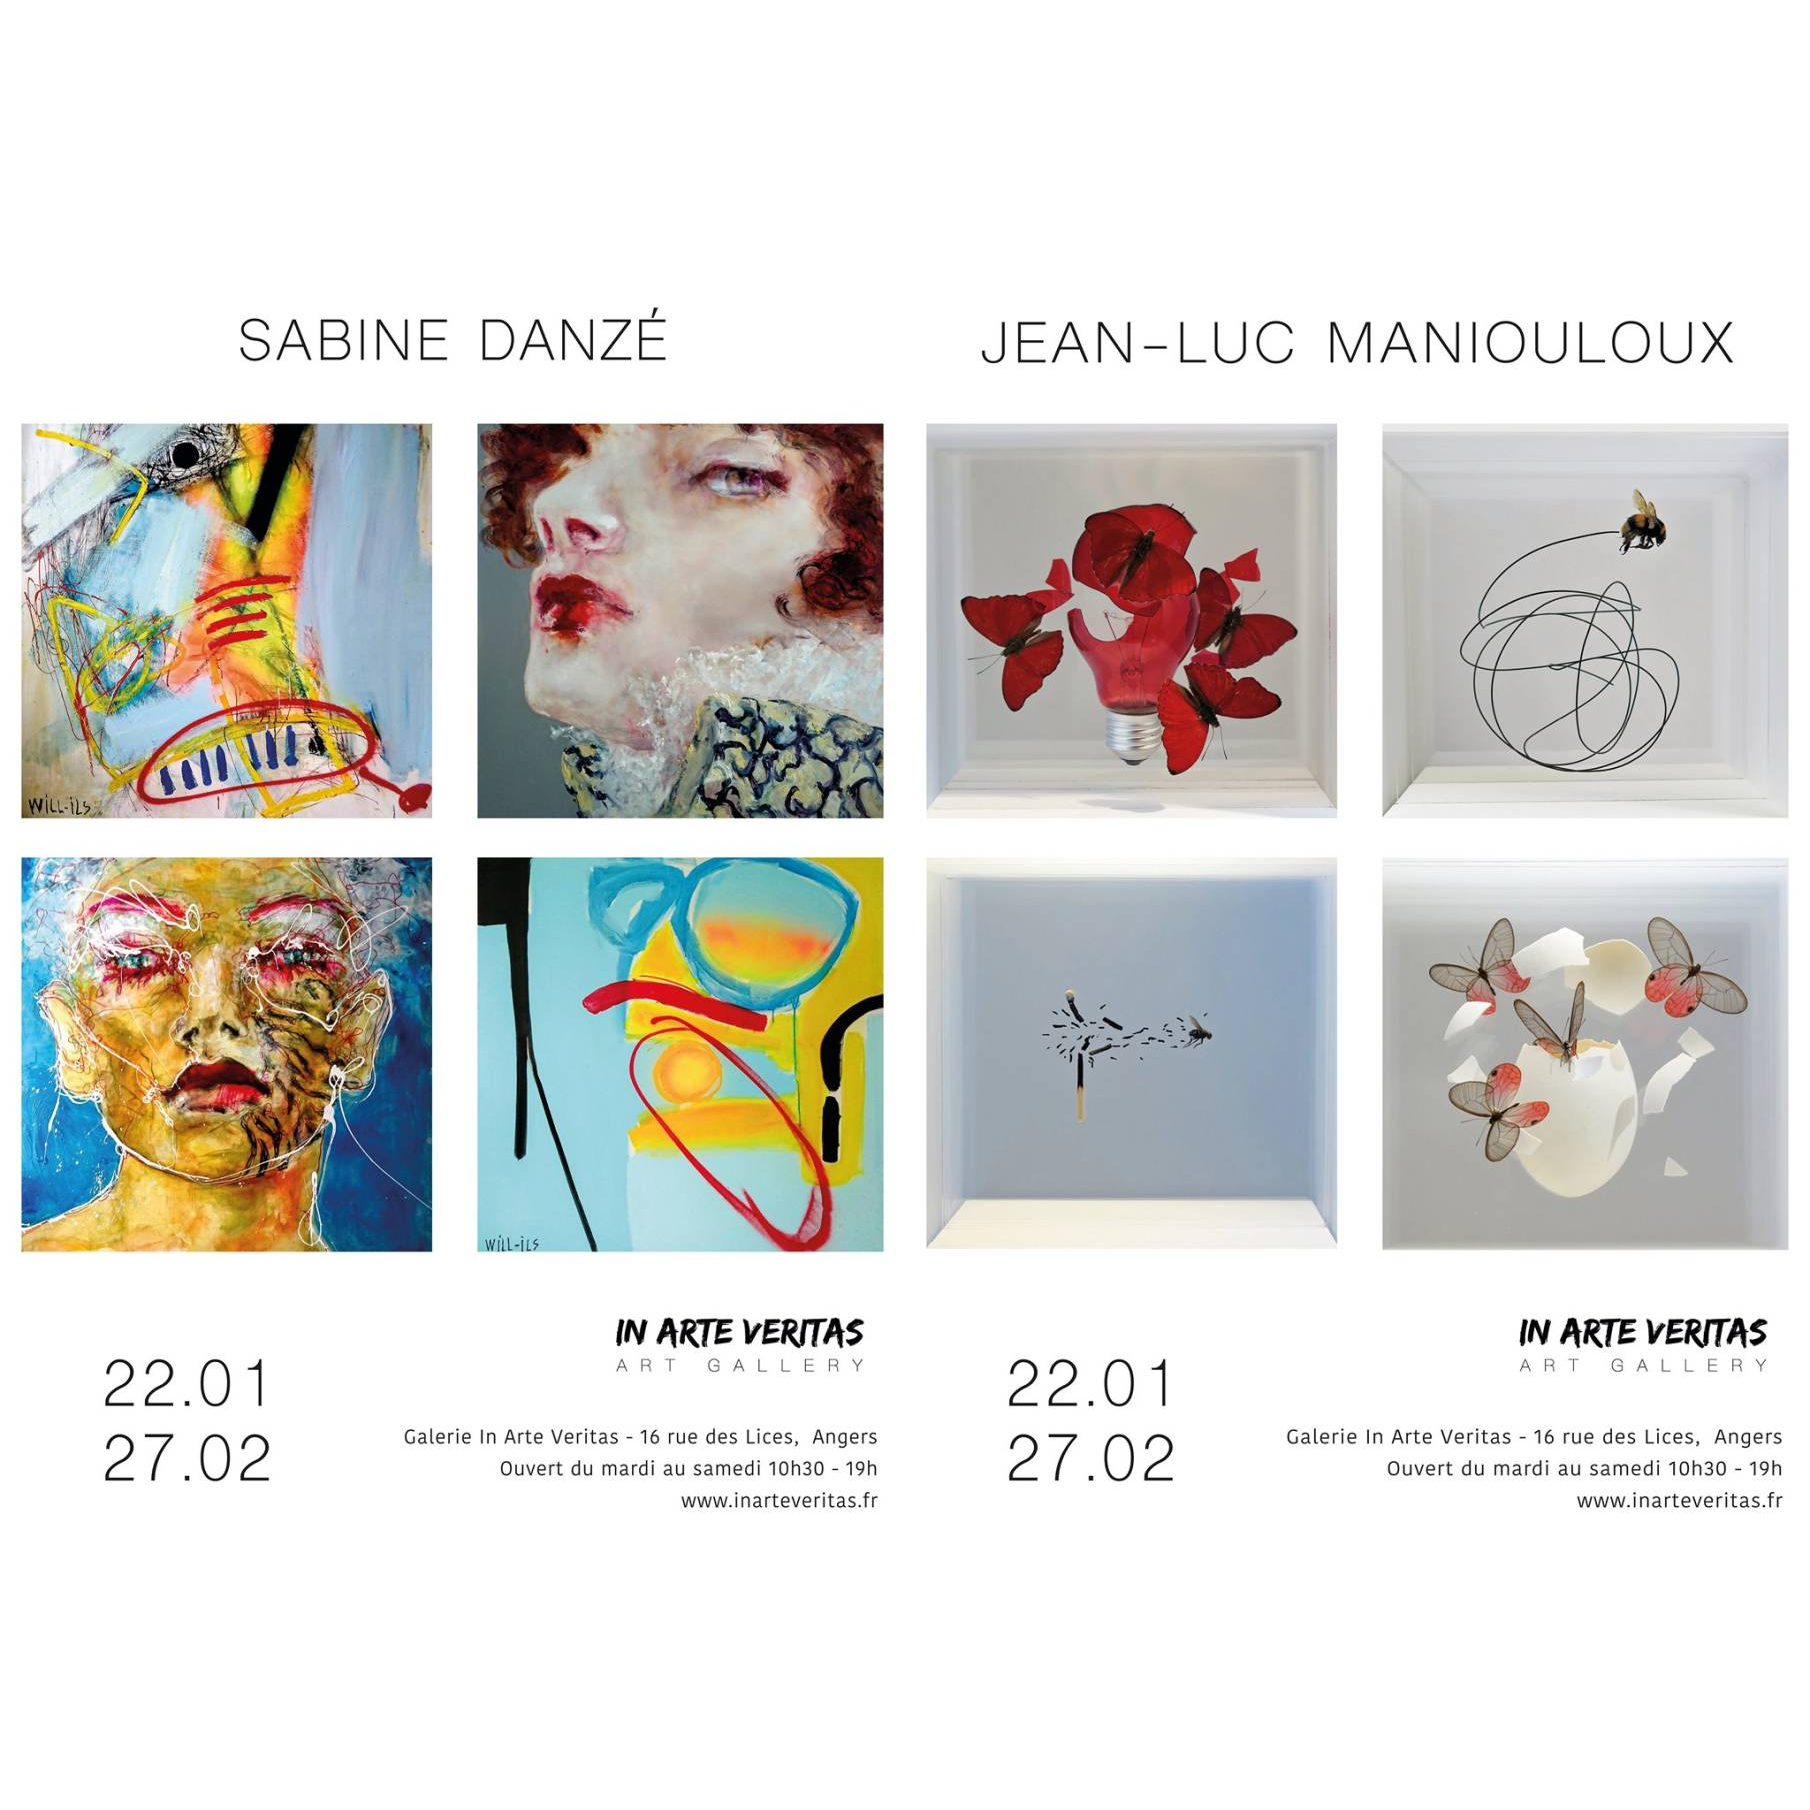 Histoires Impactantes, une exposition avec Sabine Danzé et Jean-Luc Maniouloux